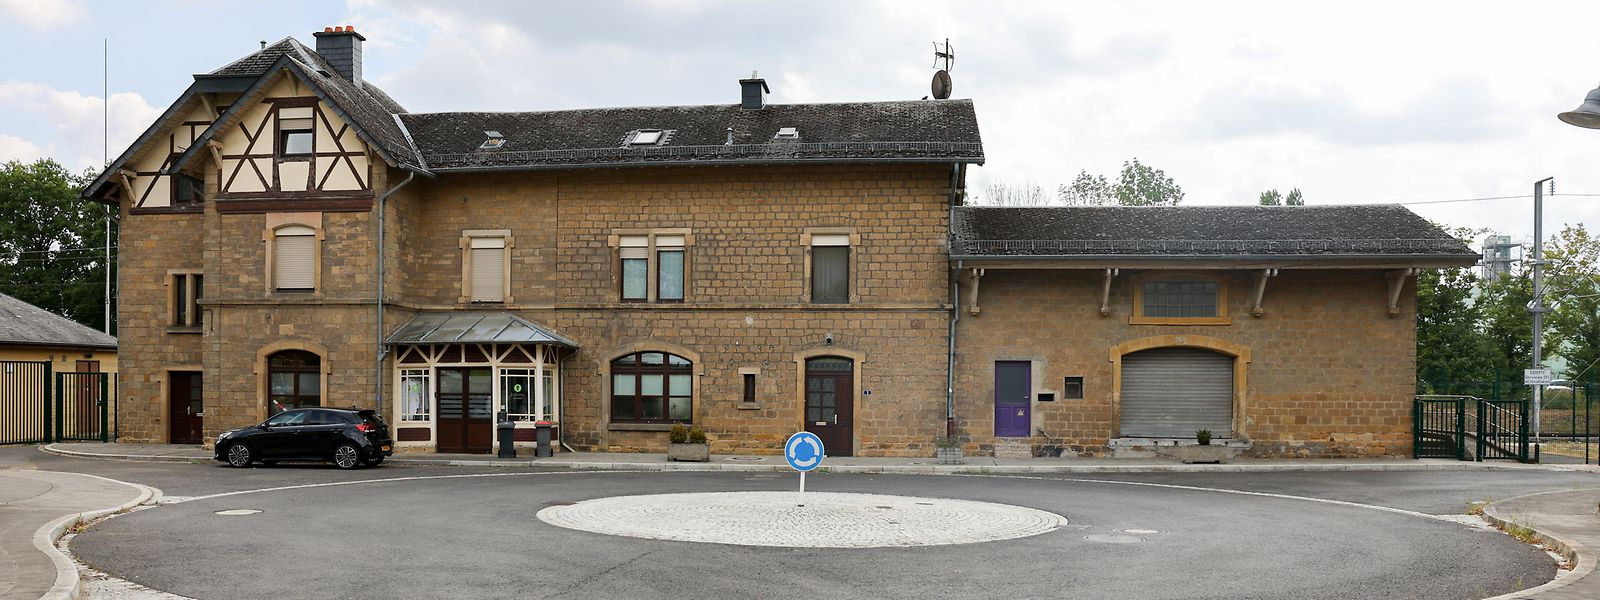 Der älteste Teil des ehemaligen Bahnhofsgebäudes stammt aus dem Jahr 1893.